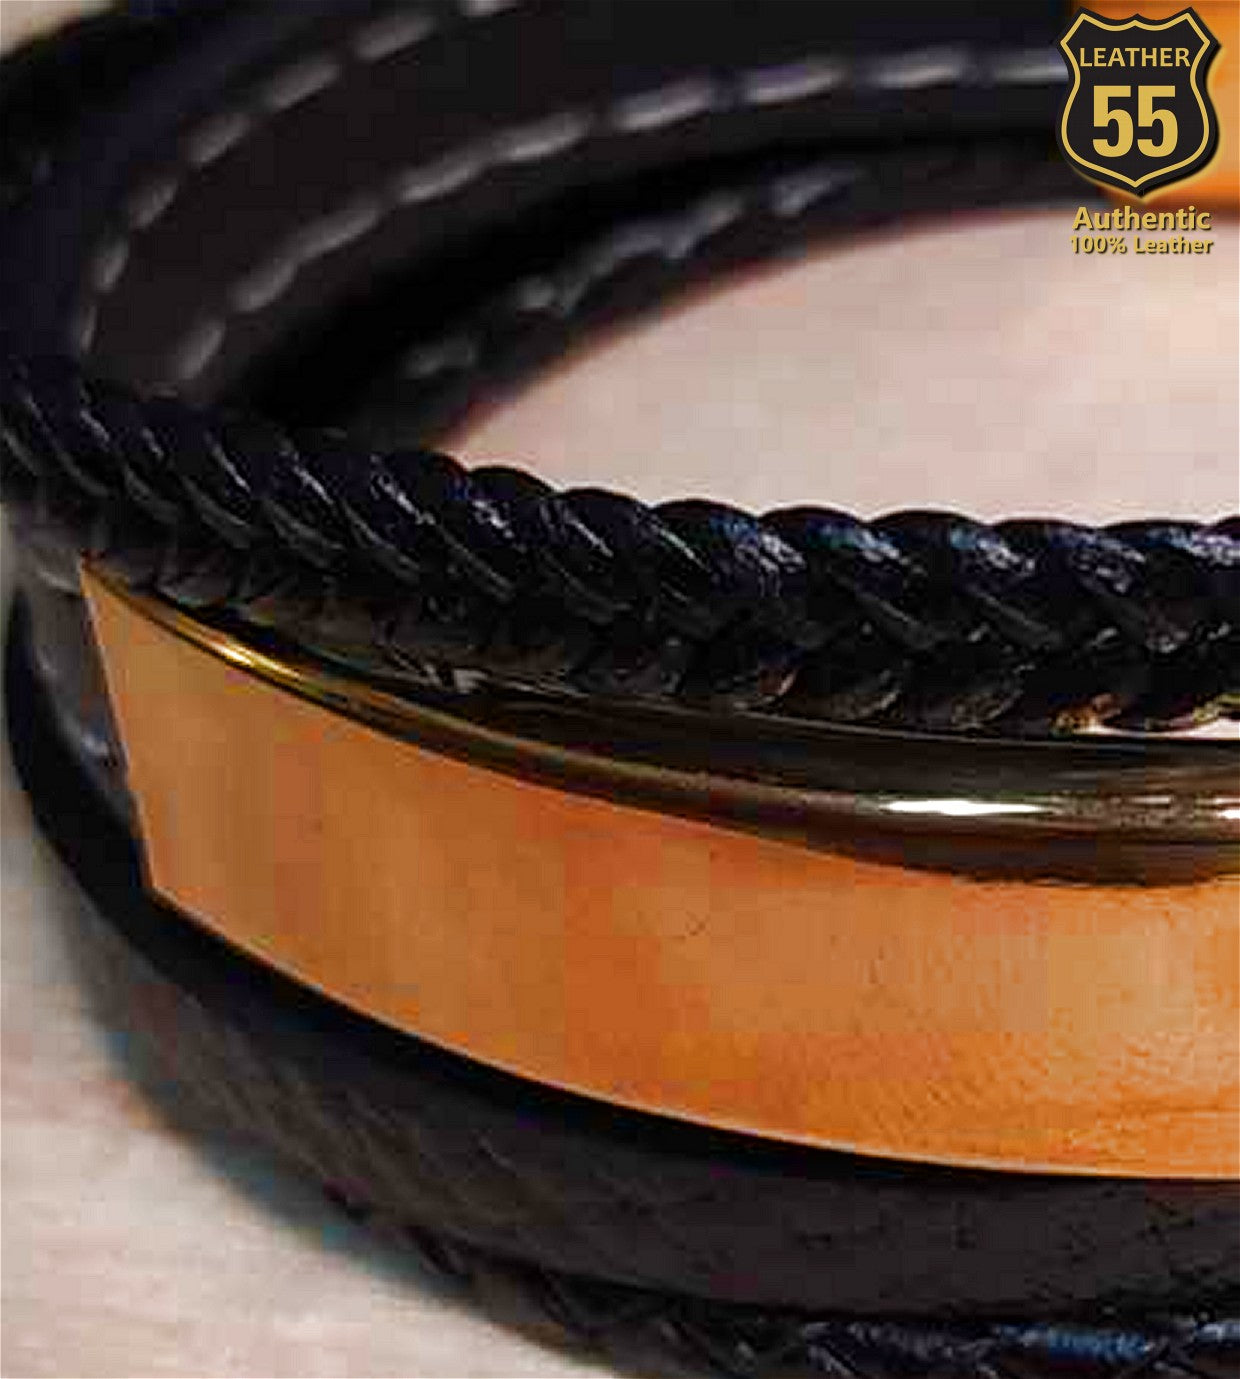 Leather 55 Ανδρικό Xειροποίητο Δερμάτινο βραχιόλι με ανοξείδωτο ατσάλι σε συσκευασία δώρου / Κωδικός Προϊόντος: C152